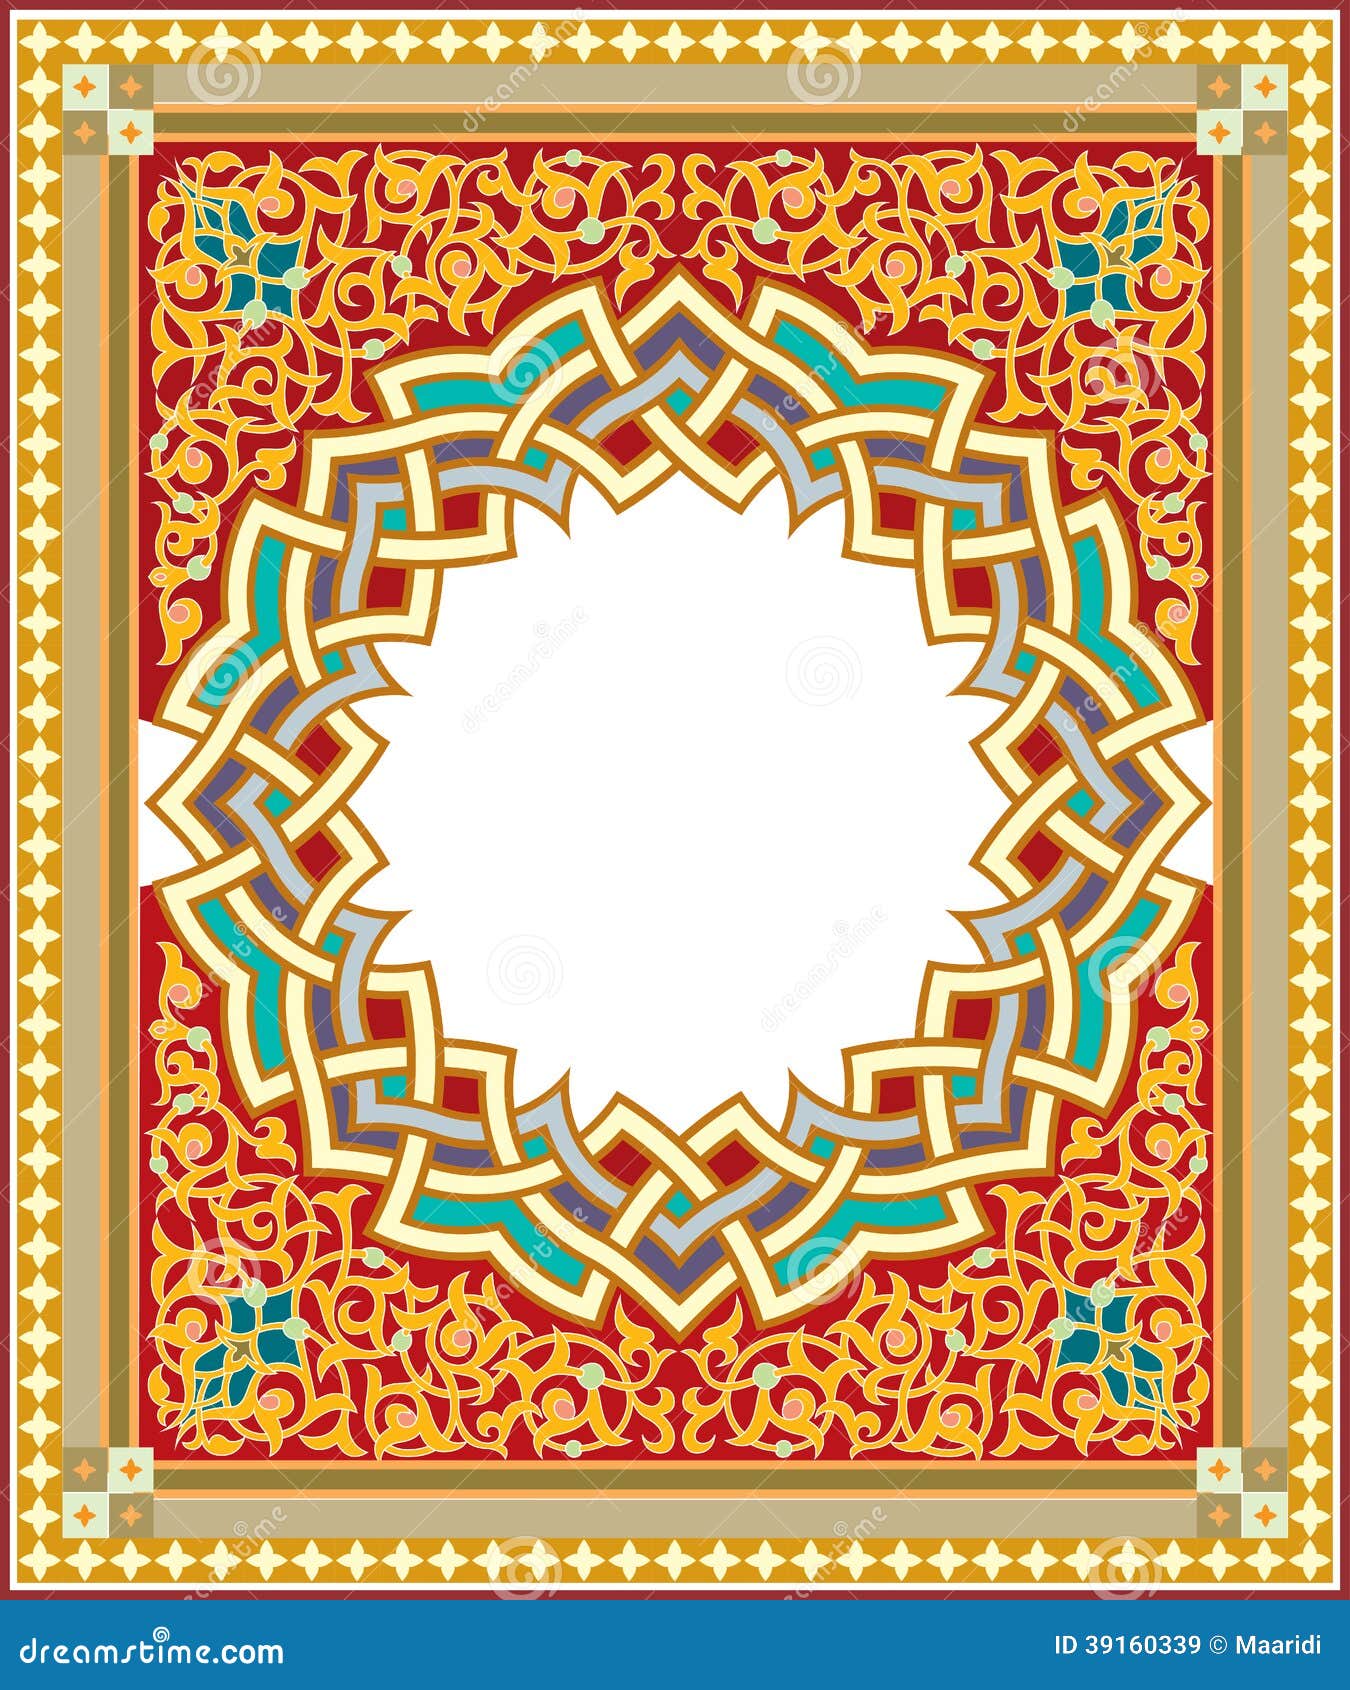 arabesque pattern